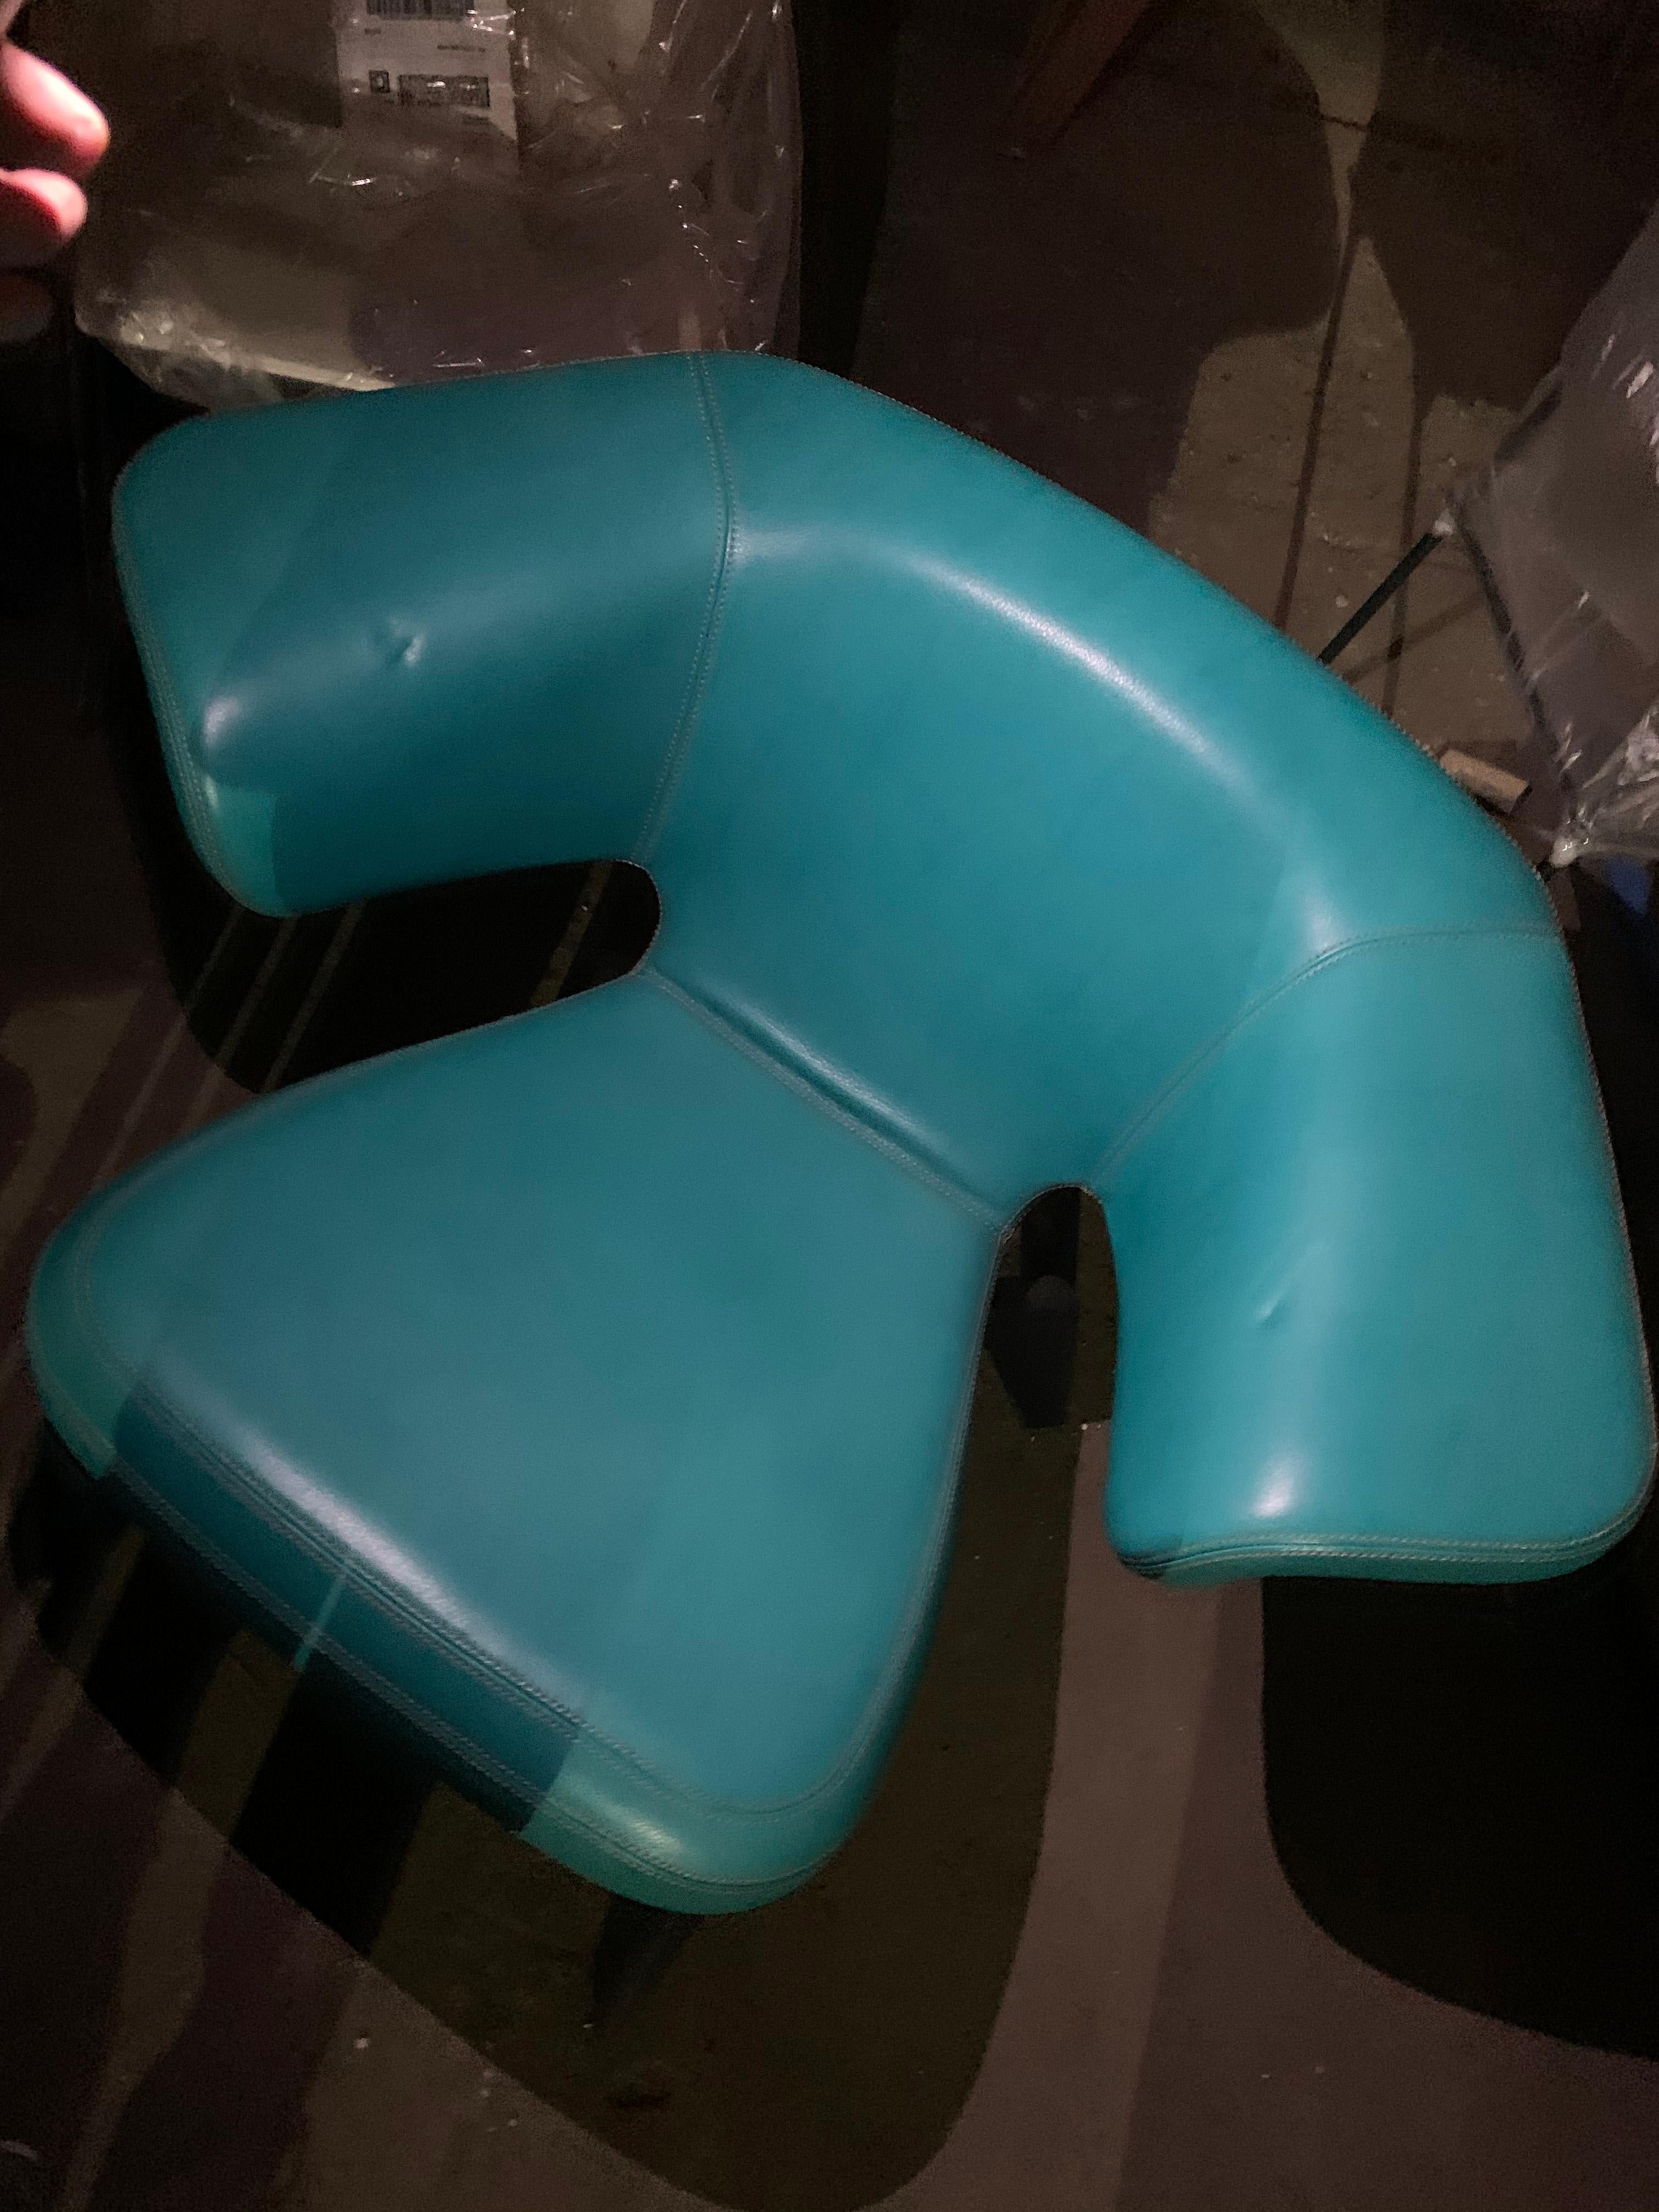 Allemand Chaise longue ClassiCon turquoise Munich conçue par Sauerbruch Hutton en STOCK en vente